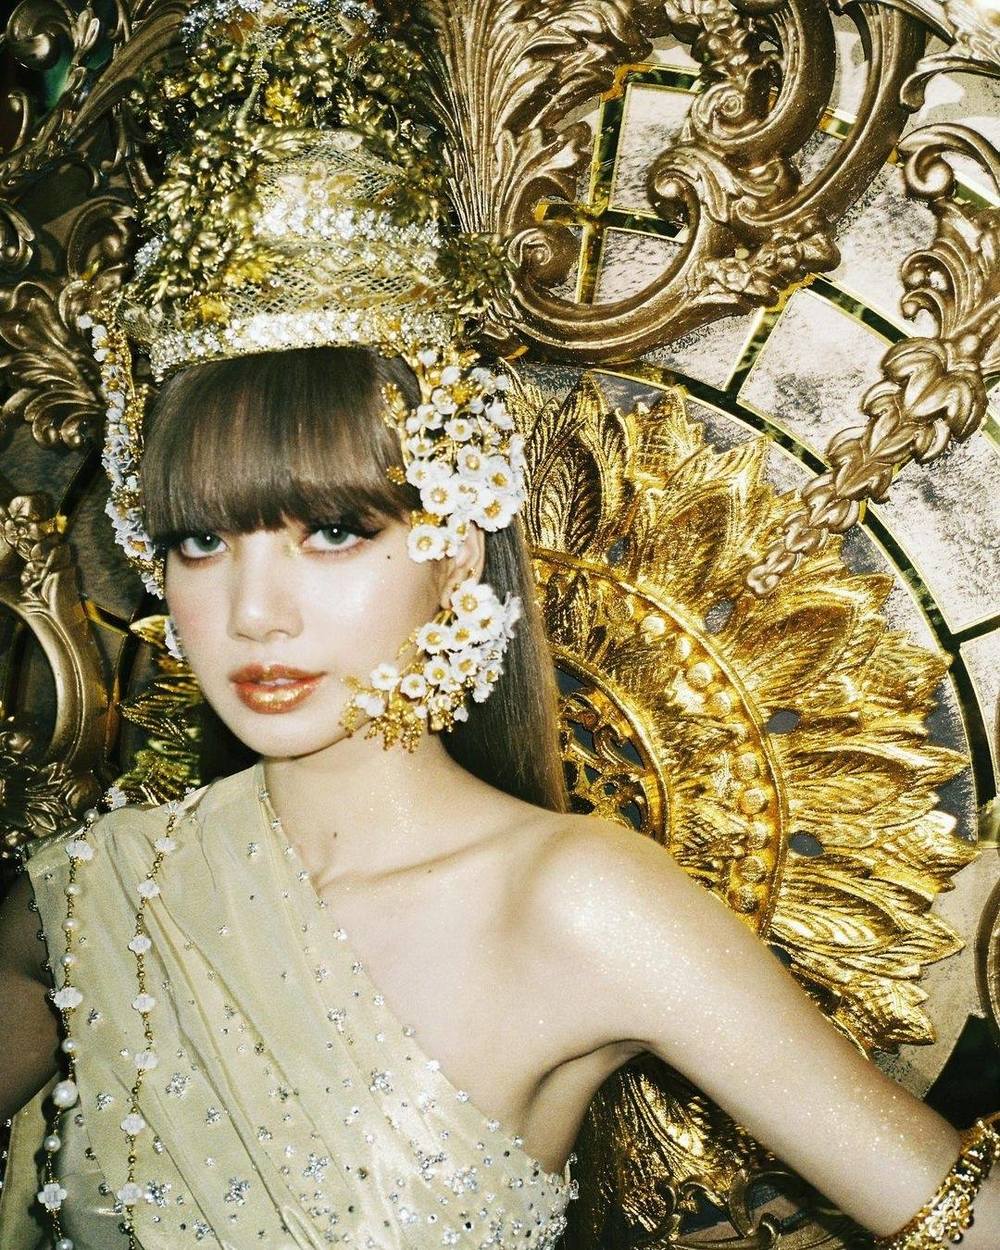 Lisa BLACKPINK mang văn hóa và truyền thống Thái Lan vào MV debut solo của mình.